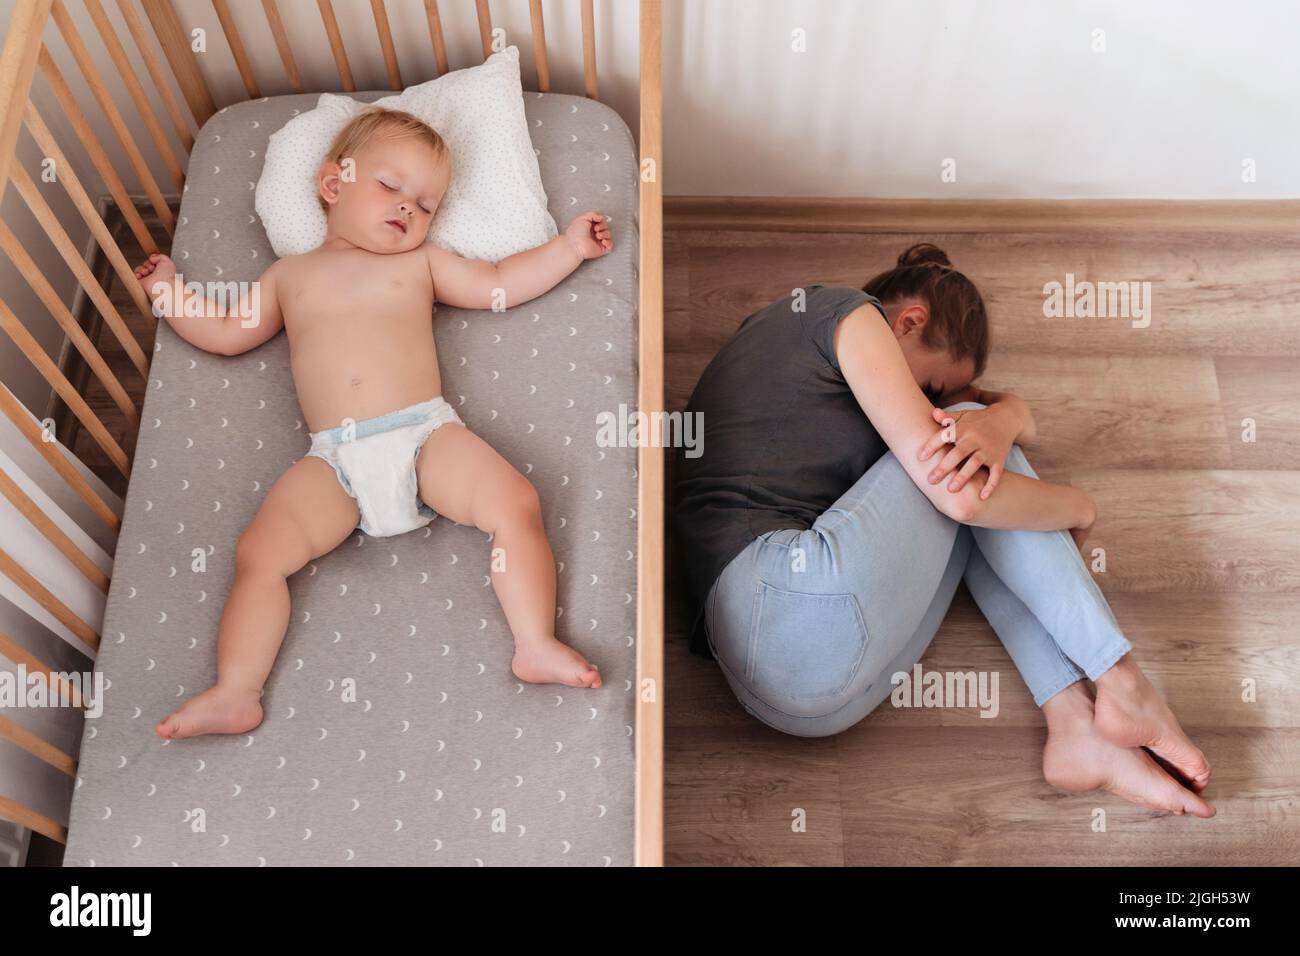 Vue supérieure d'un bébé mignon qui se couche dans son lit à côté de sa mère qui pleure, se sente désespéré et seul, souffrant de dépression postnatale. Difficultés de maternité Banque D'Images